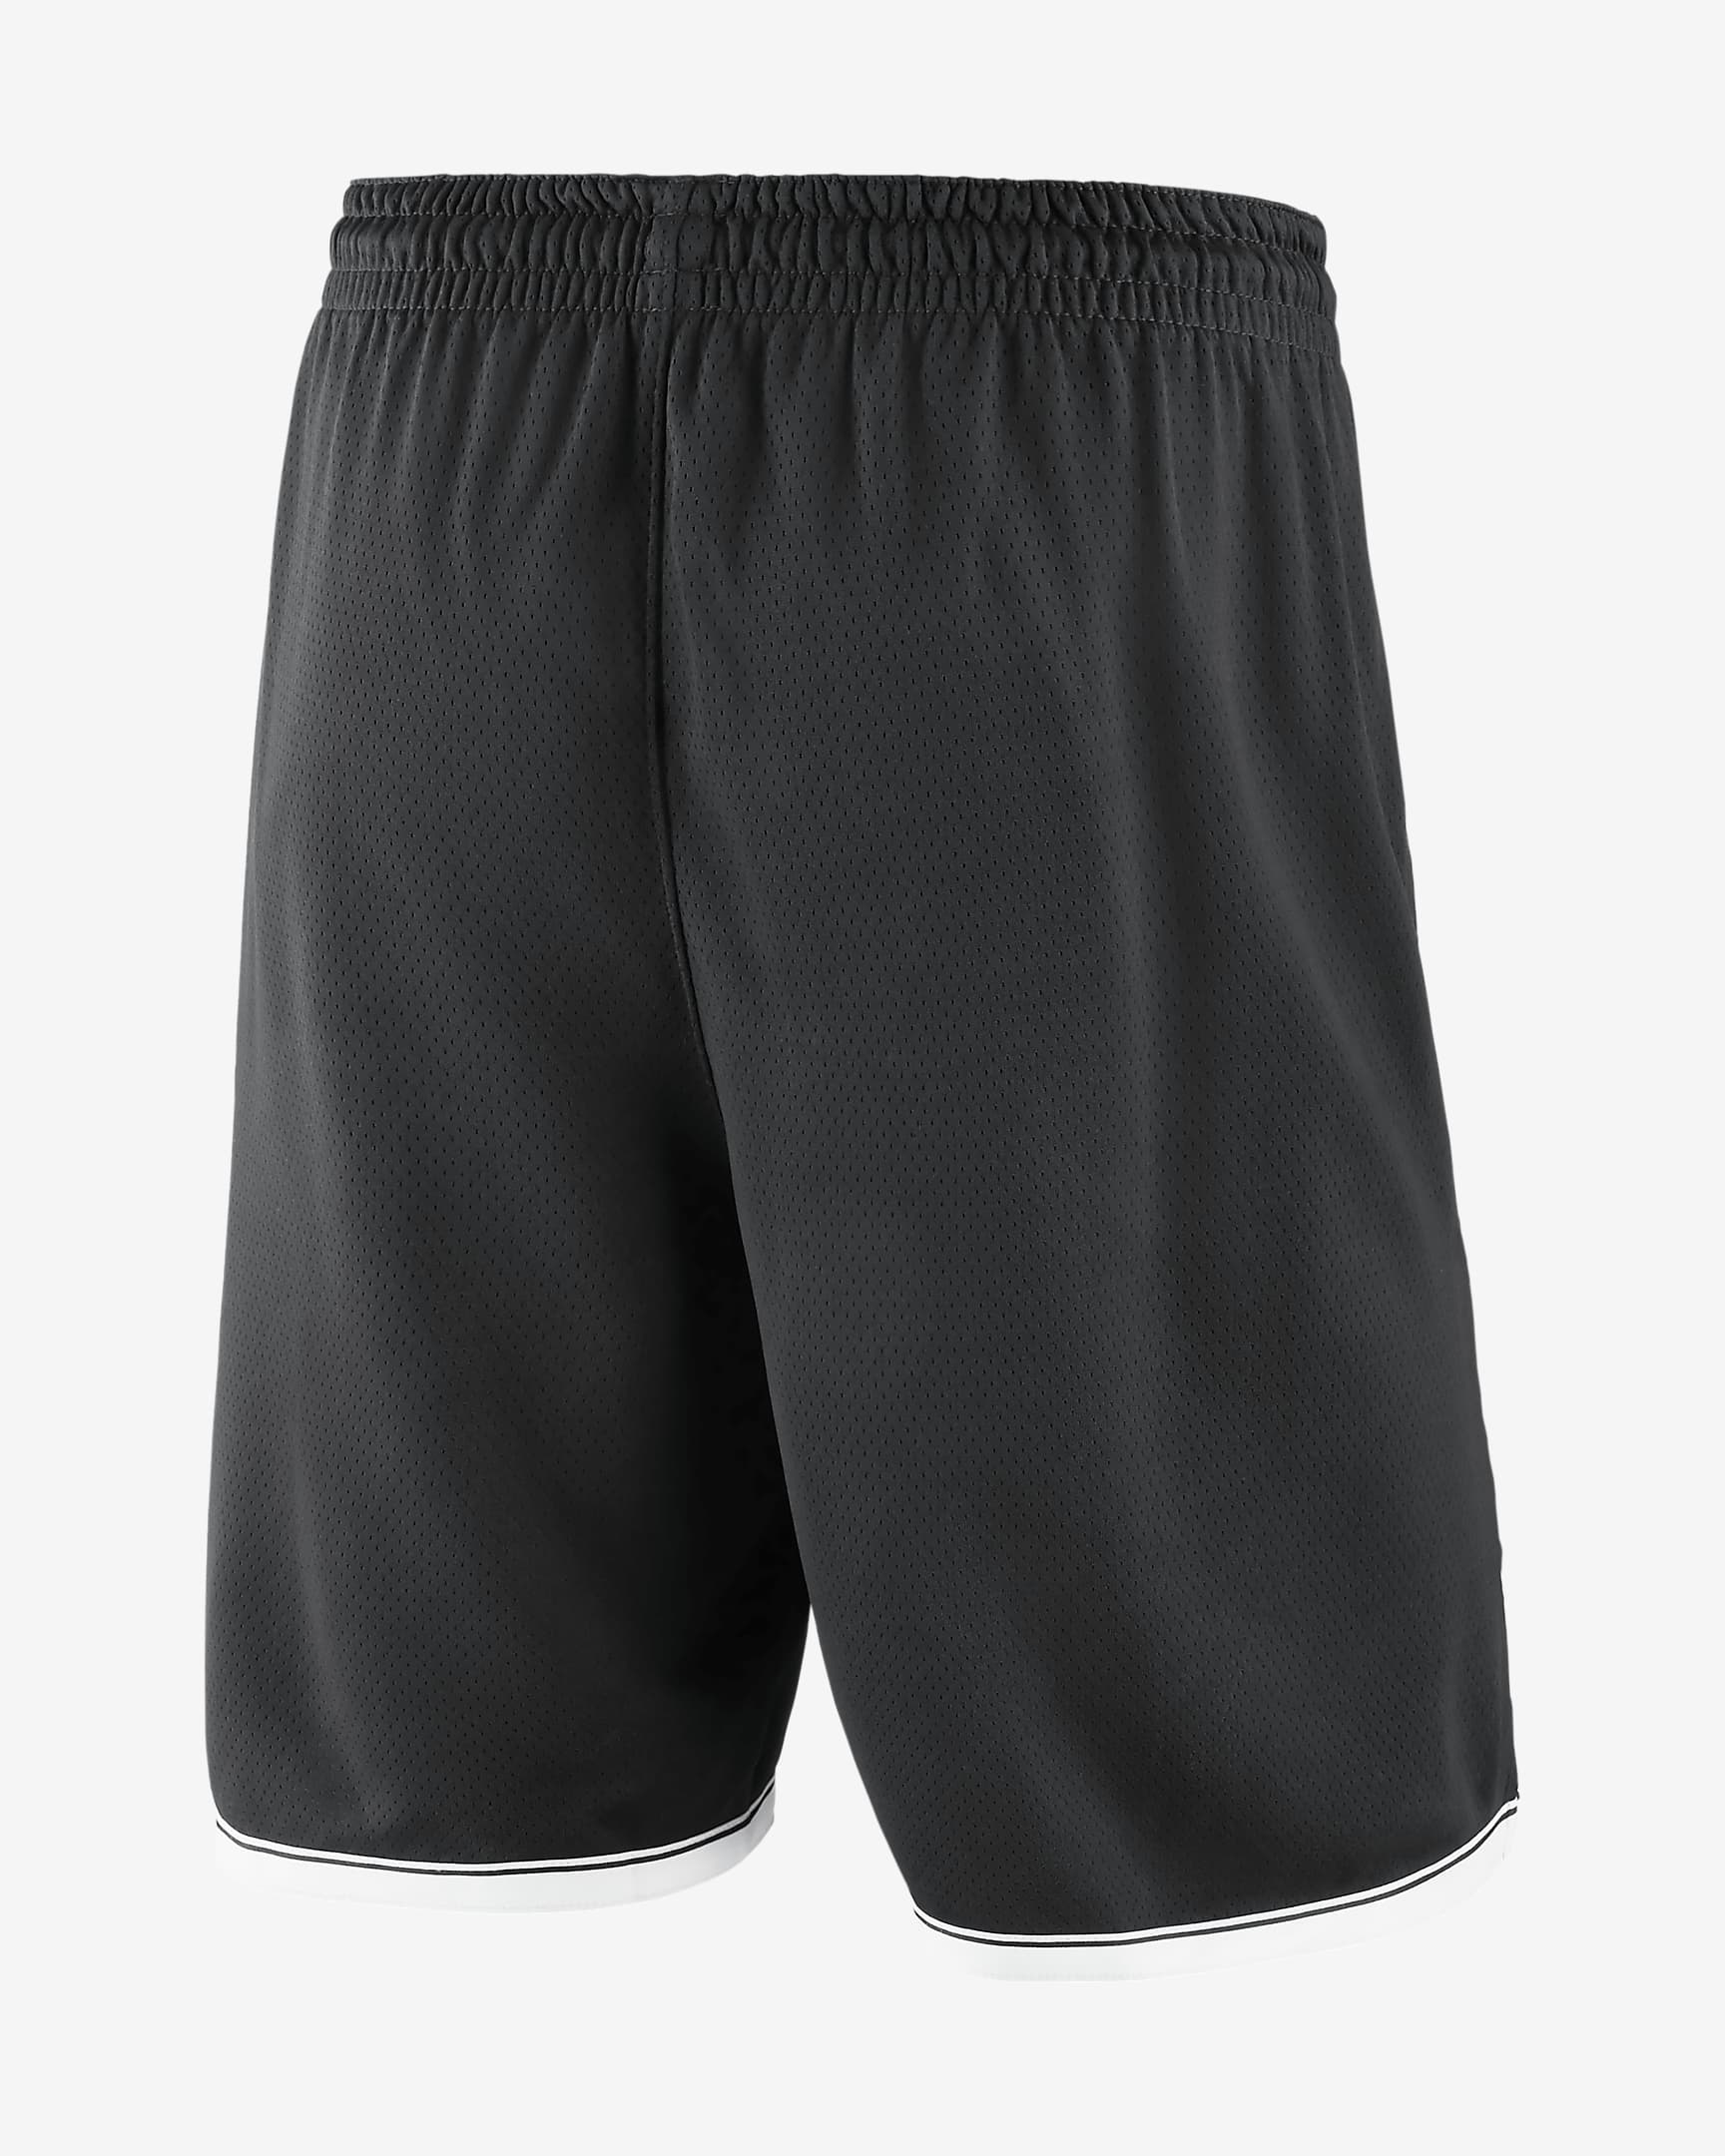 Brooklyn Nets Icon Edition Men's Nike NBA Swingman Shorts. Nike IN